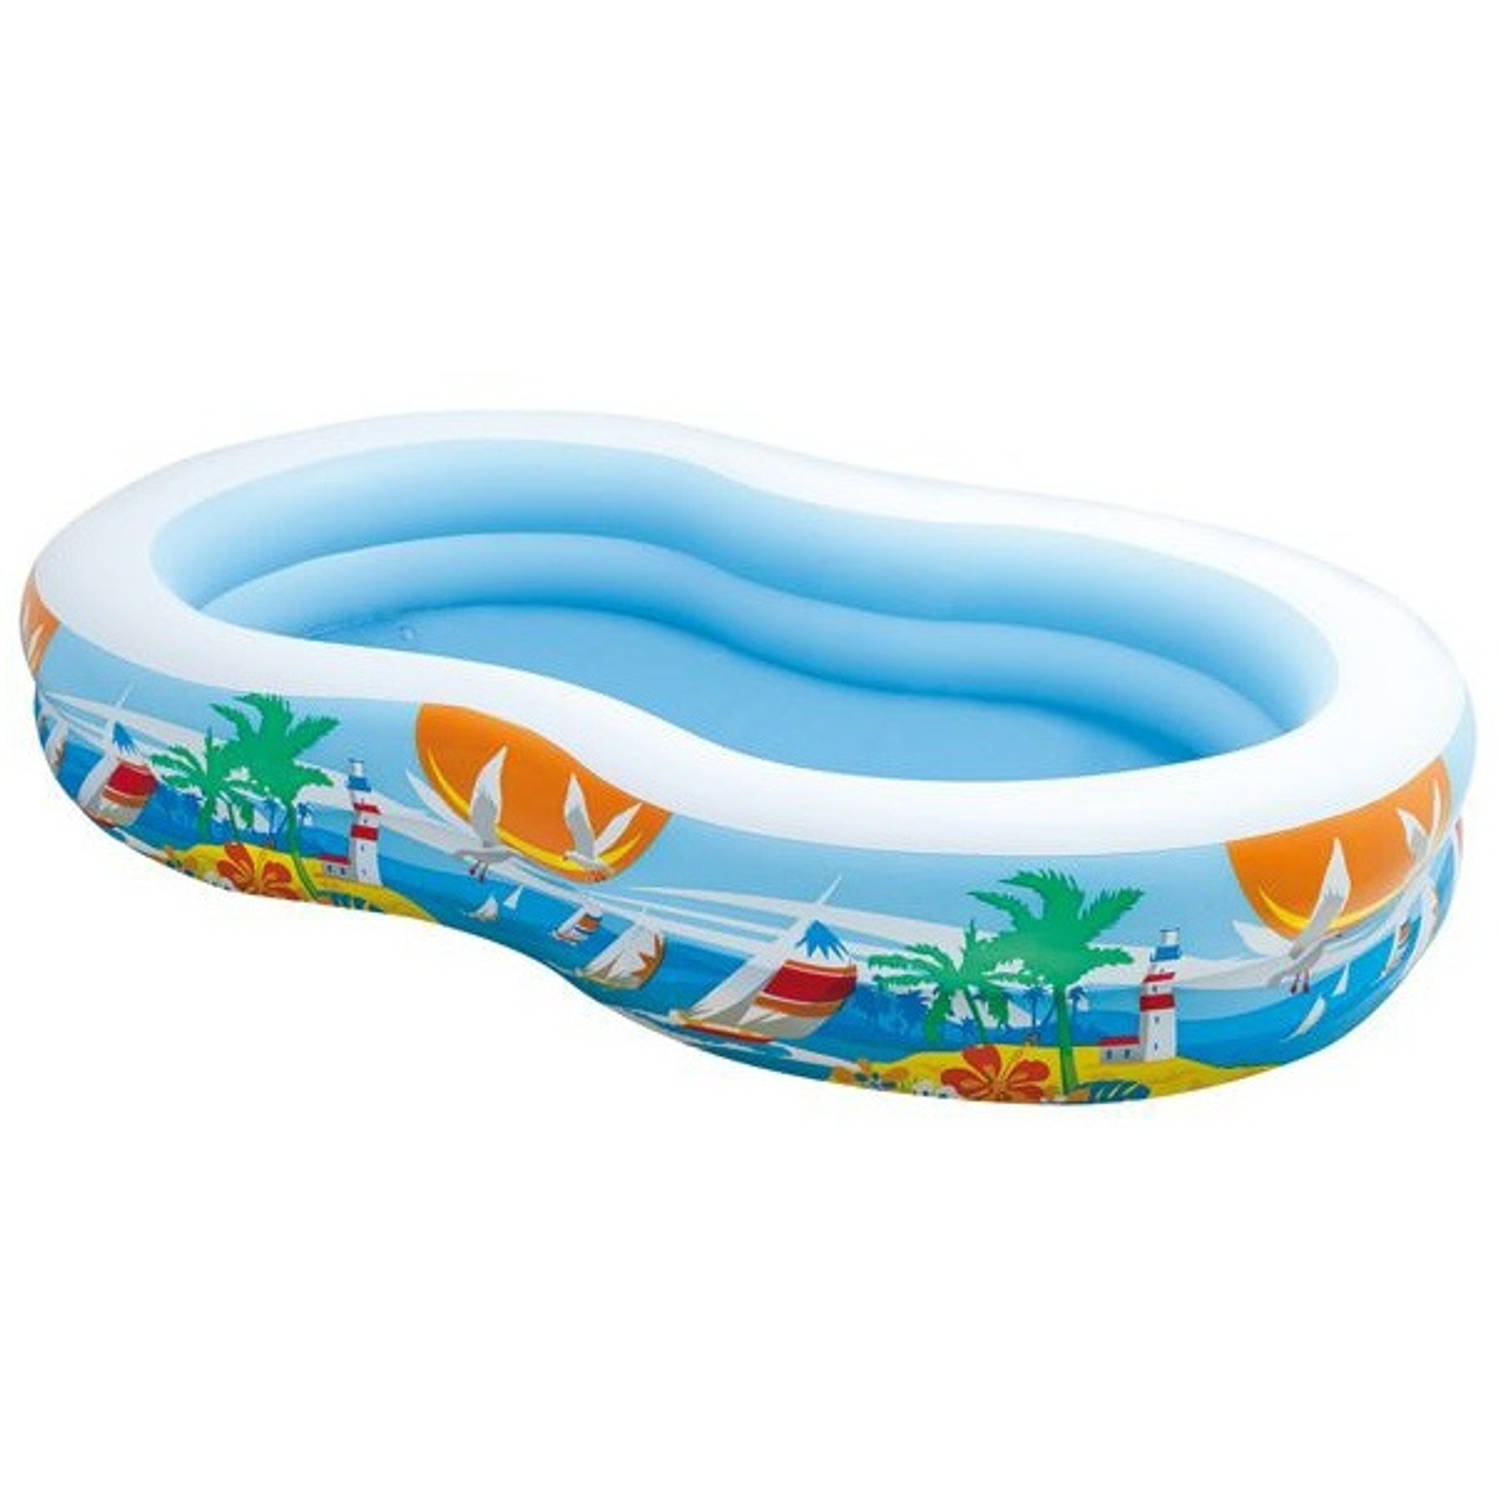 Intex 56490 Opblaasbaar Ovaal Multi kleuren bovengronds zwembad